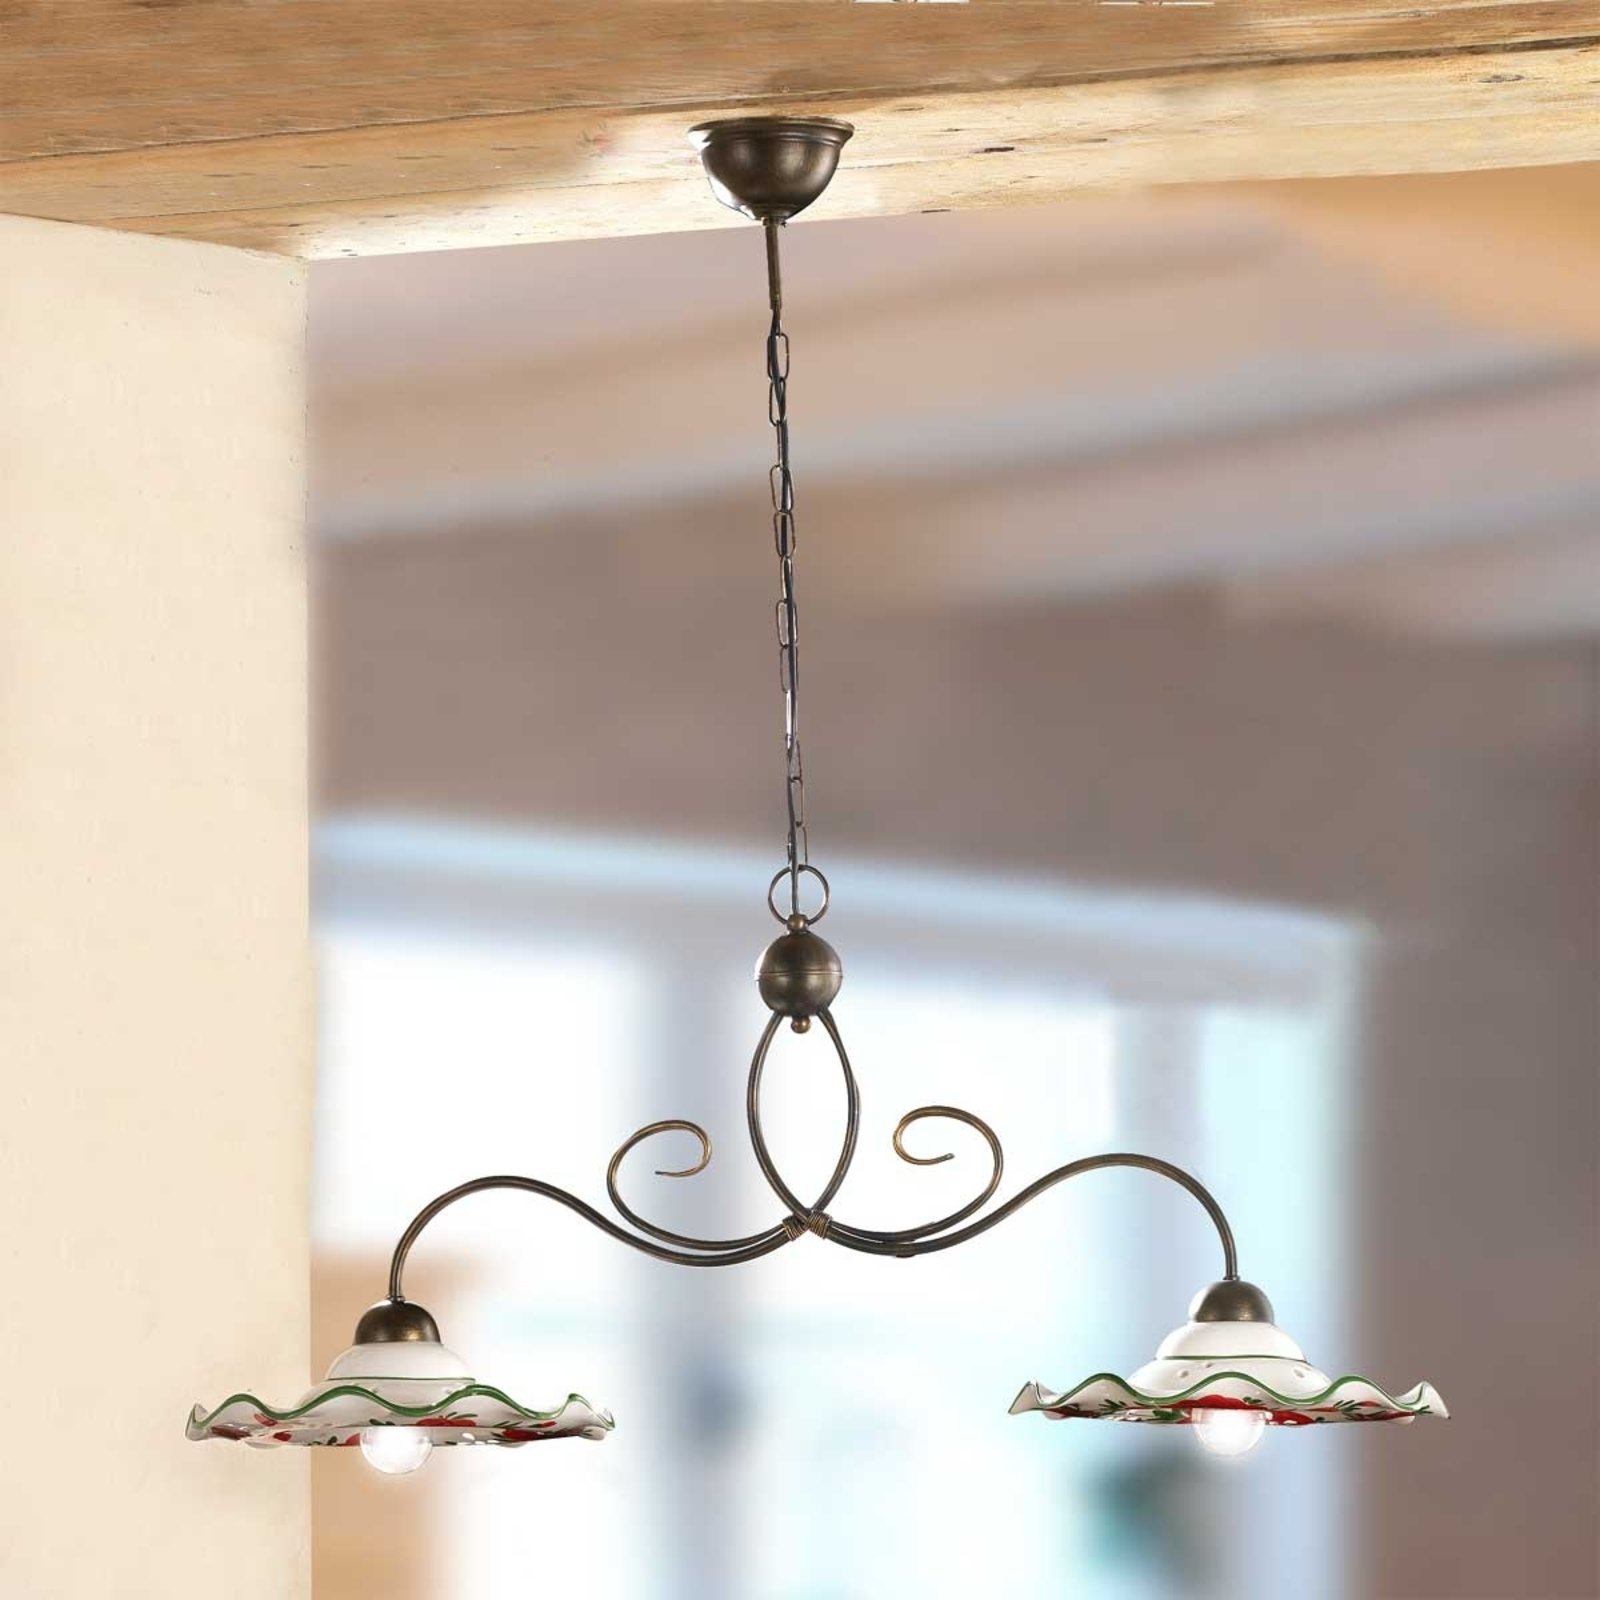 Hanglamp ROSOLACCI met keramieken kappen, 2-lichts